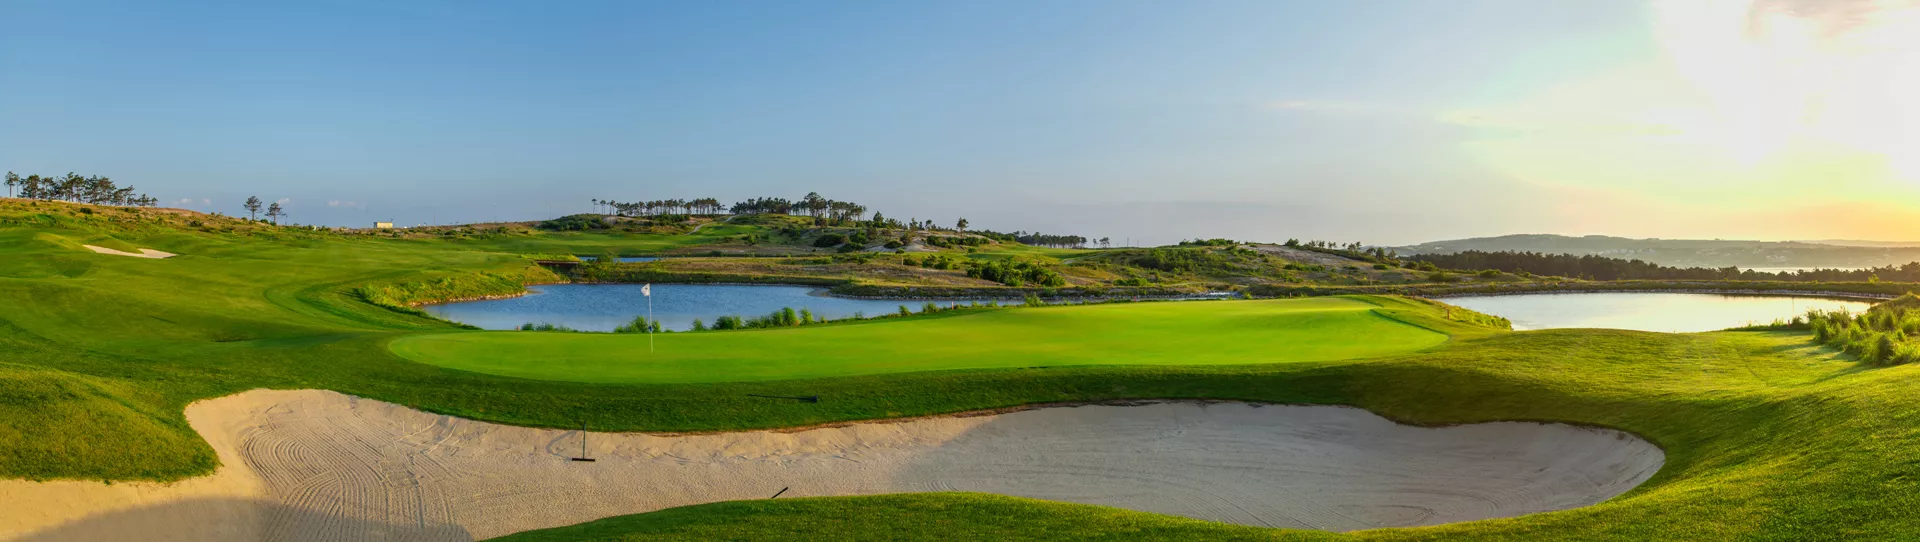 Golf Course, best deals green fees, Portugal, Lisbon